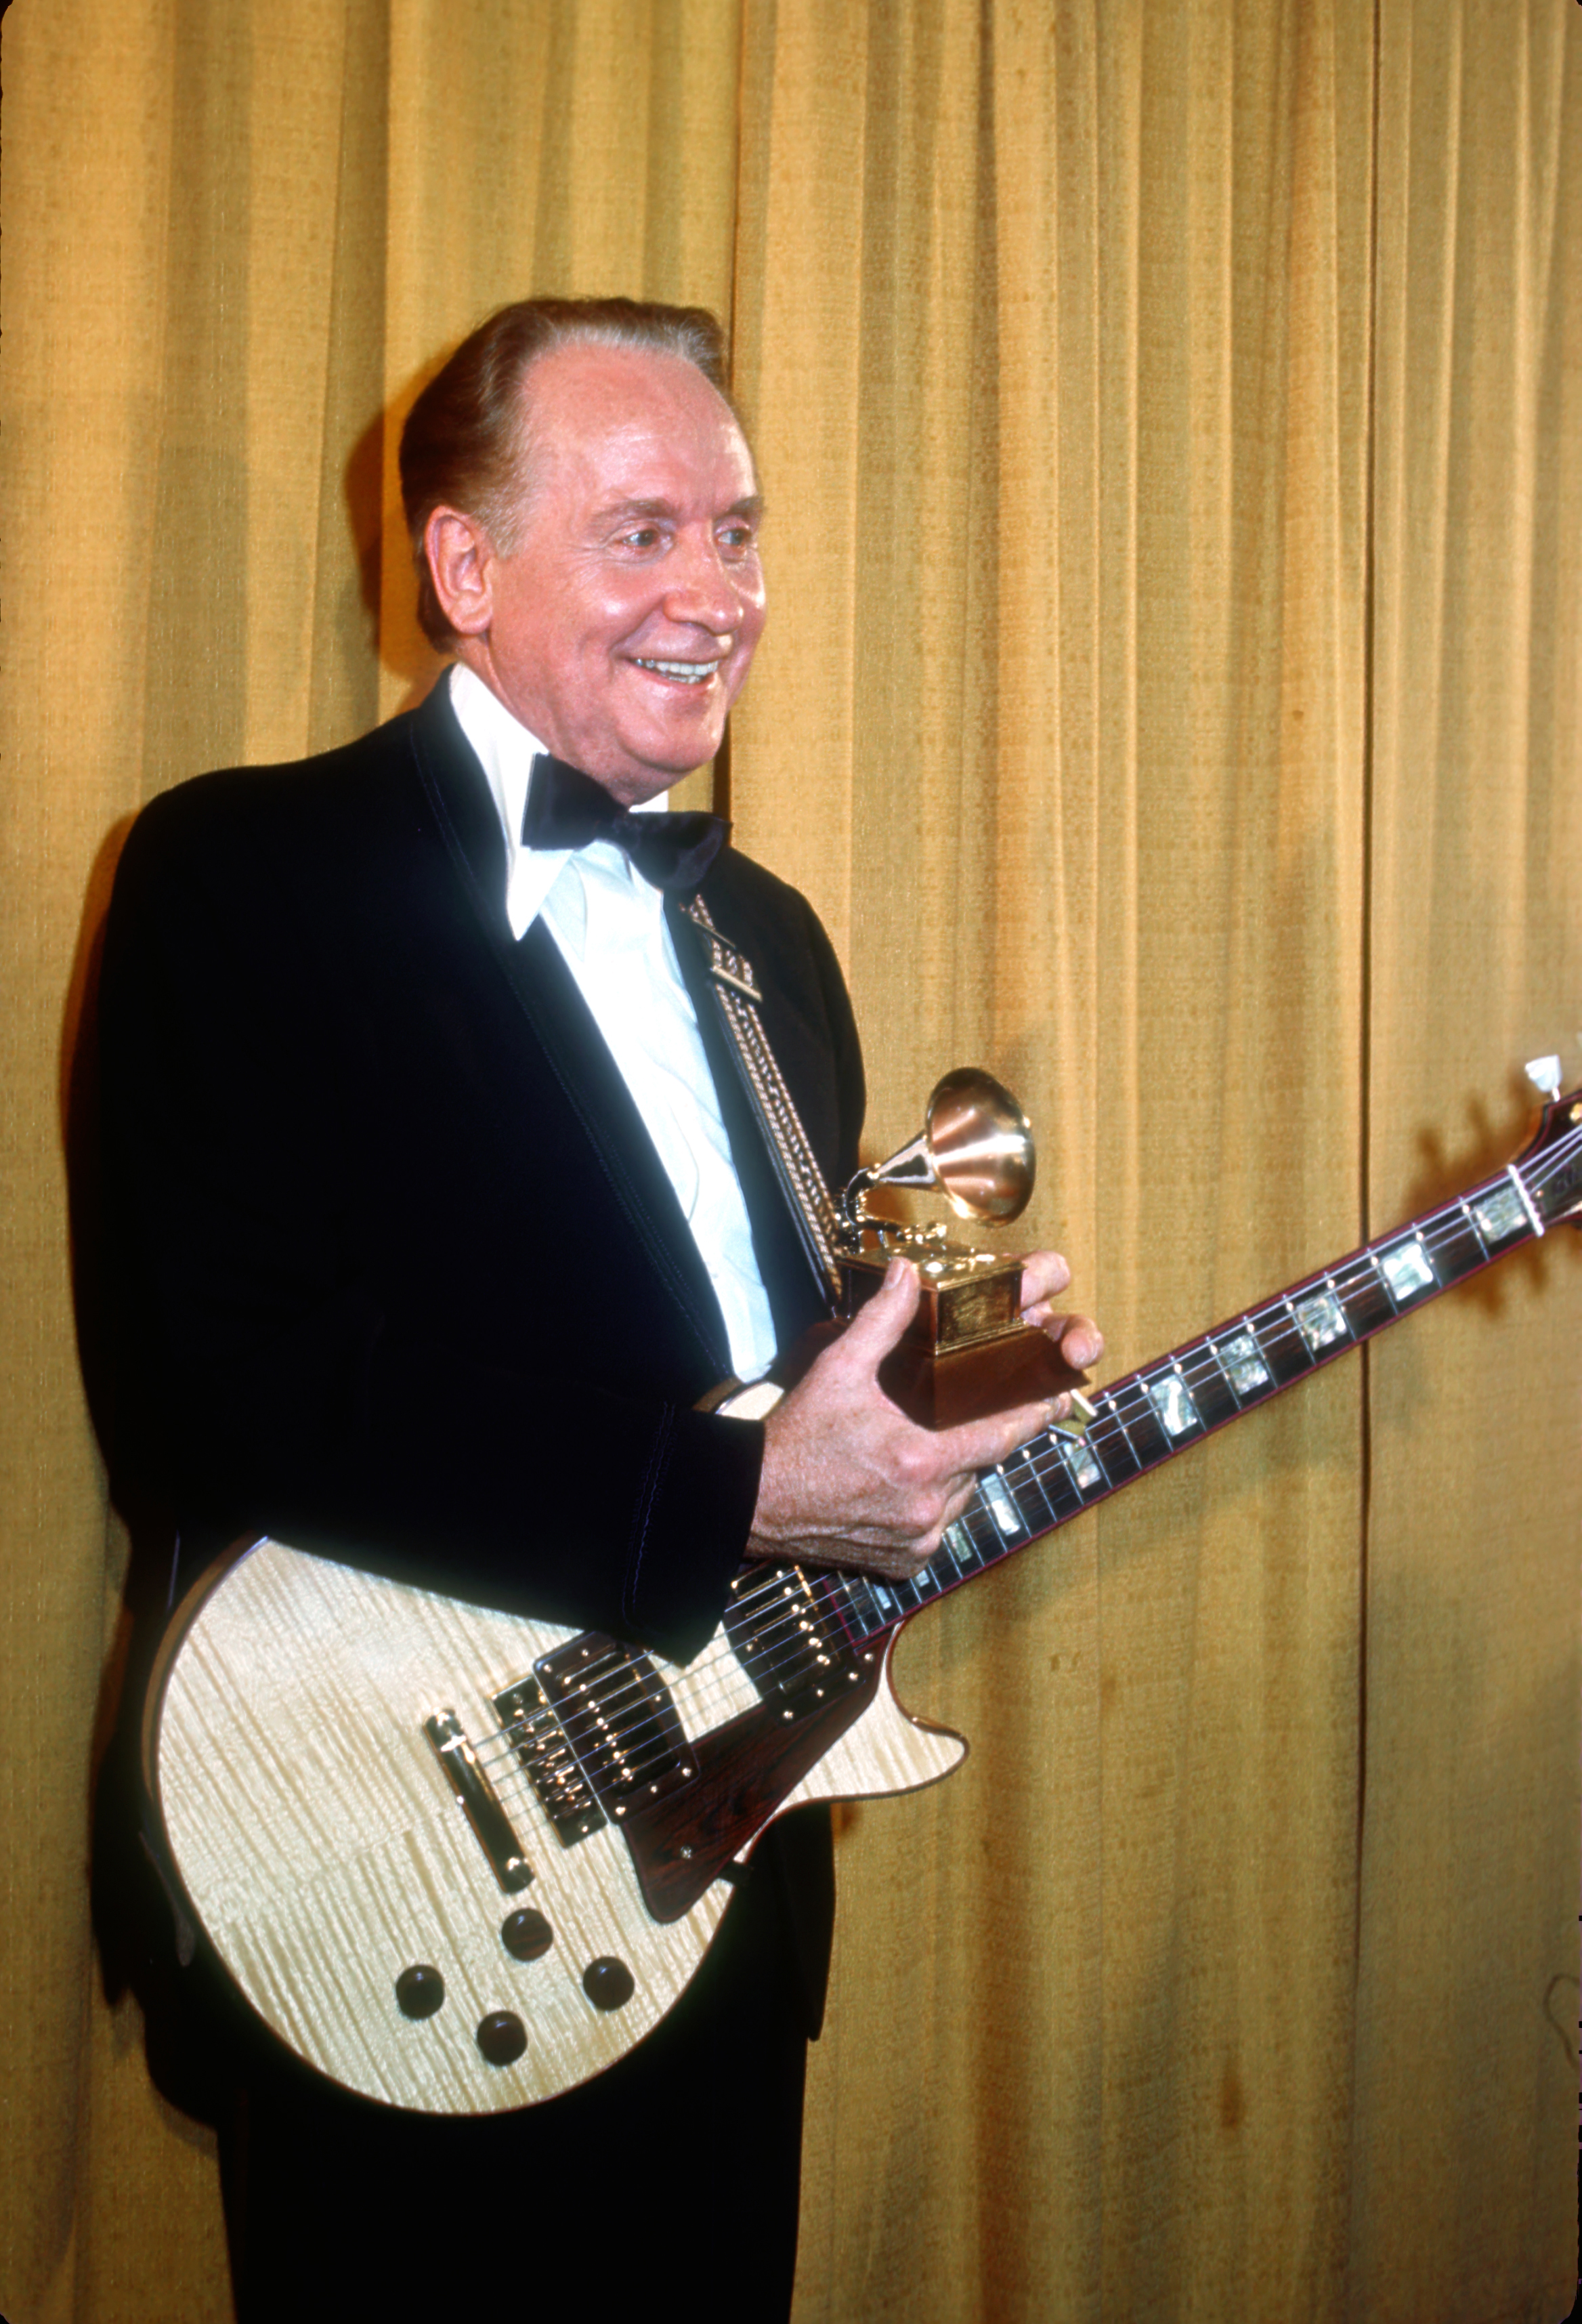 Les Paul Receives Grammy Lifetime Achievement Award